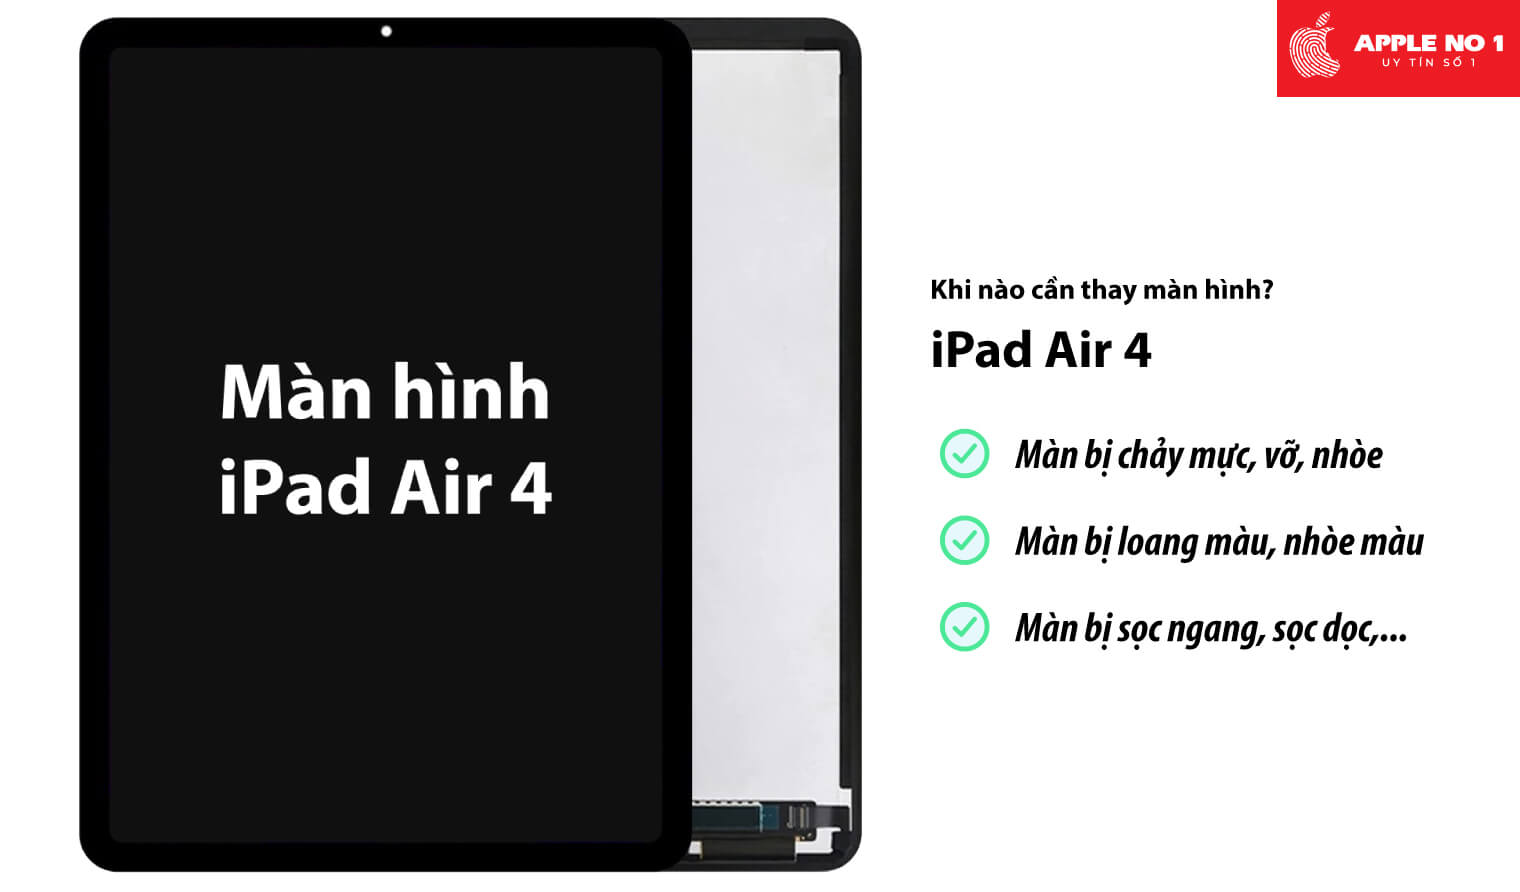 Thay màn hình iPad air 4 khi nào?